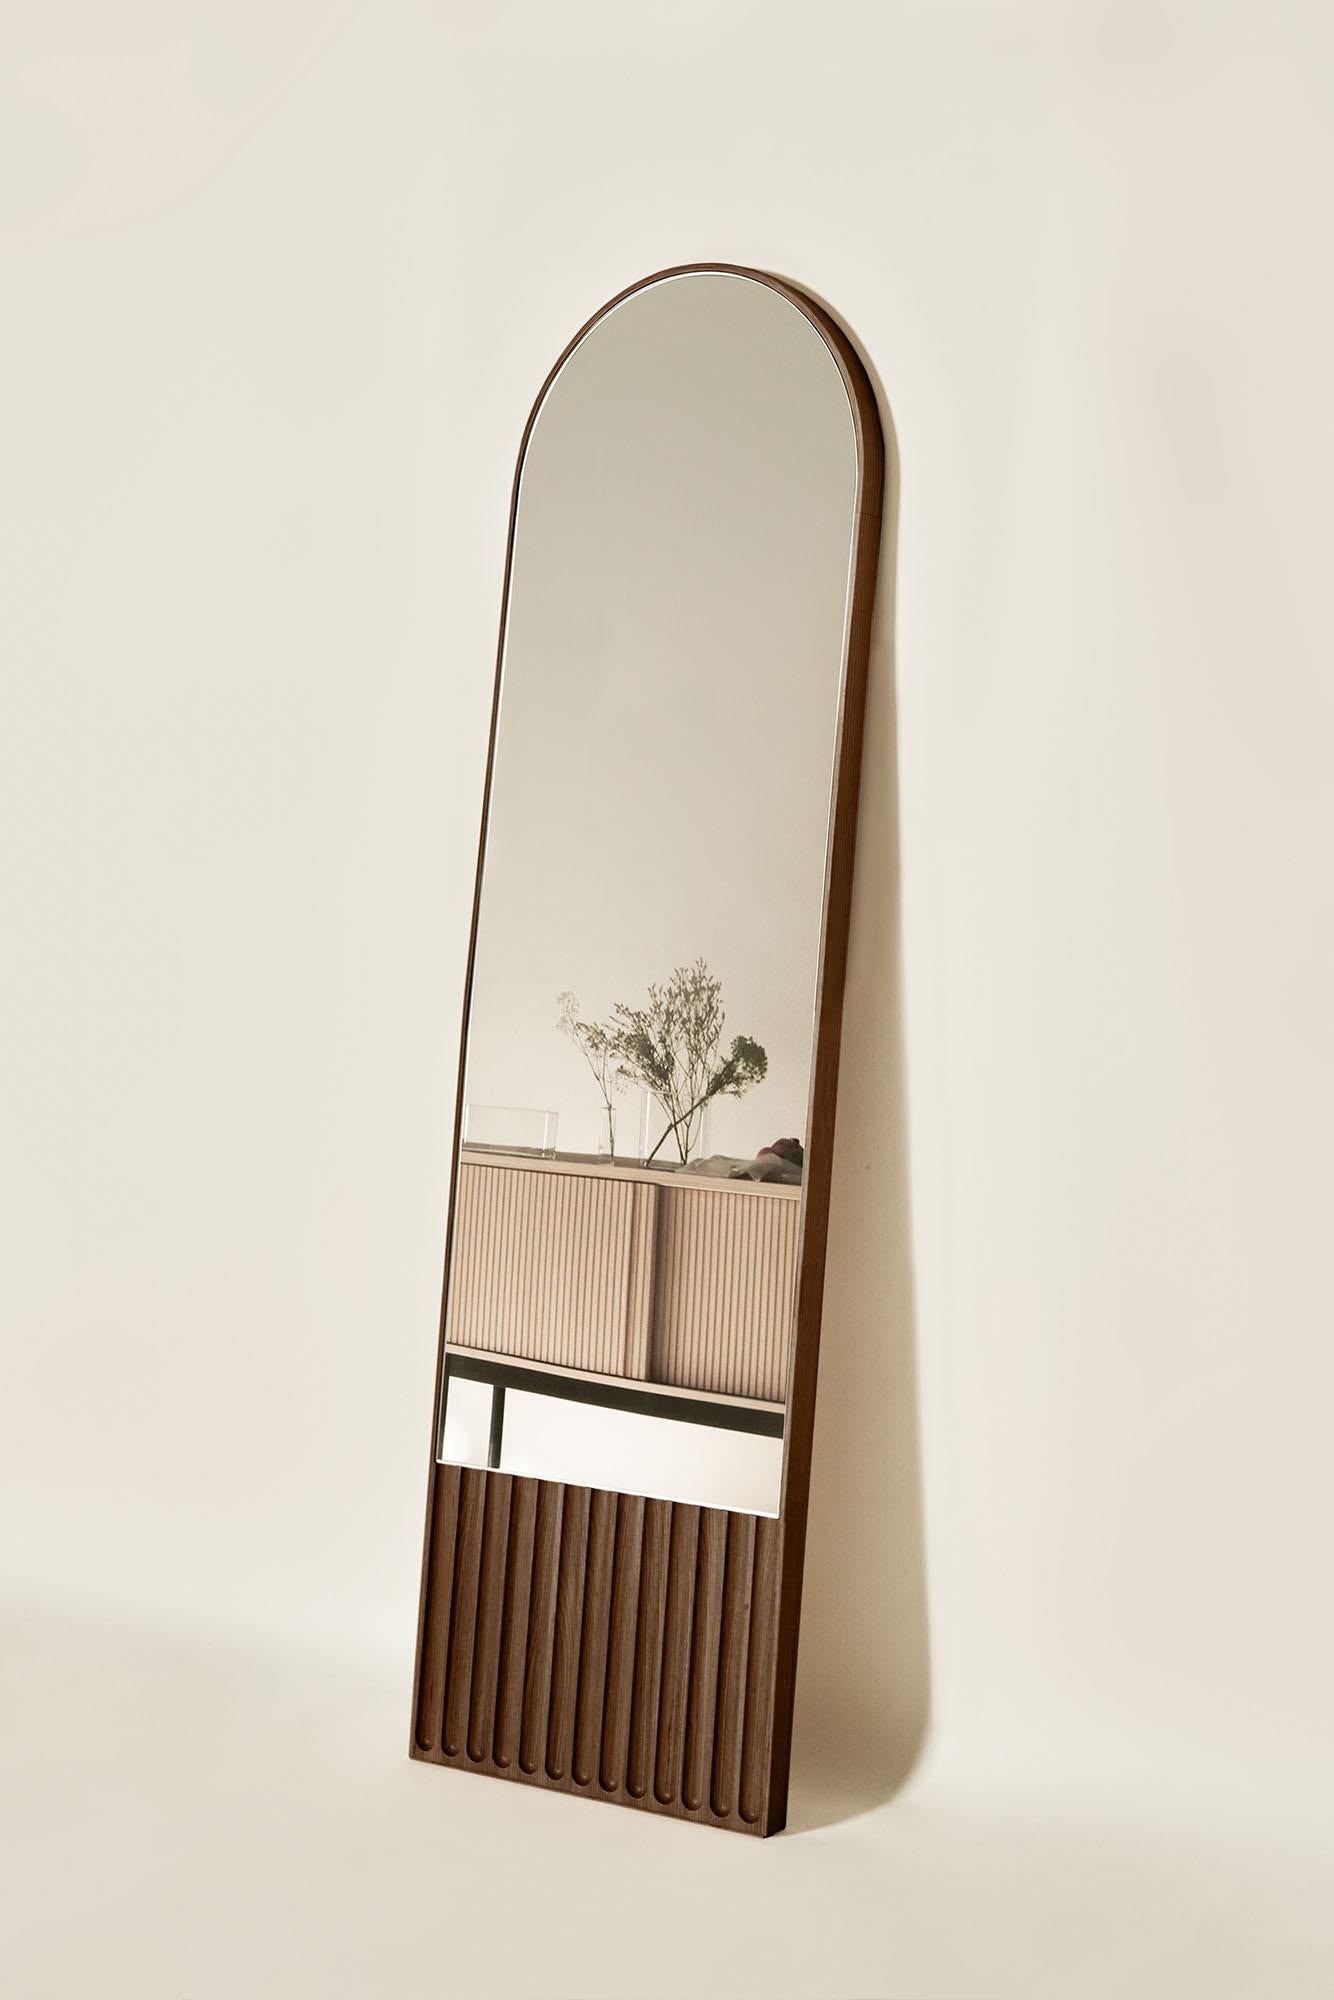 Les miroirs Tutto Sesto font partie de la collection 2023 de meubles contemporains en bois massif. Née du dialogue entre Dale Italia et Cono Studio, la gamme est définie par une esthétique essentielle, en phase avec les tendances actuelles sans